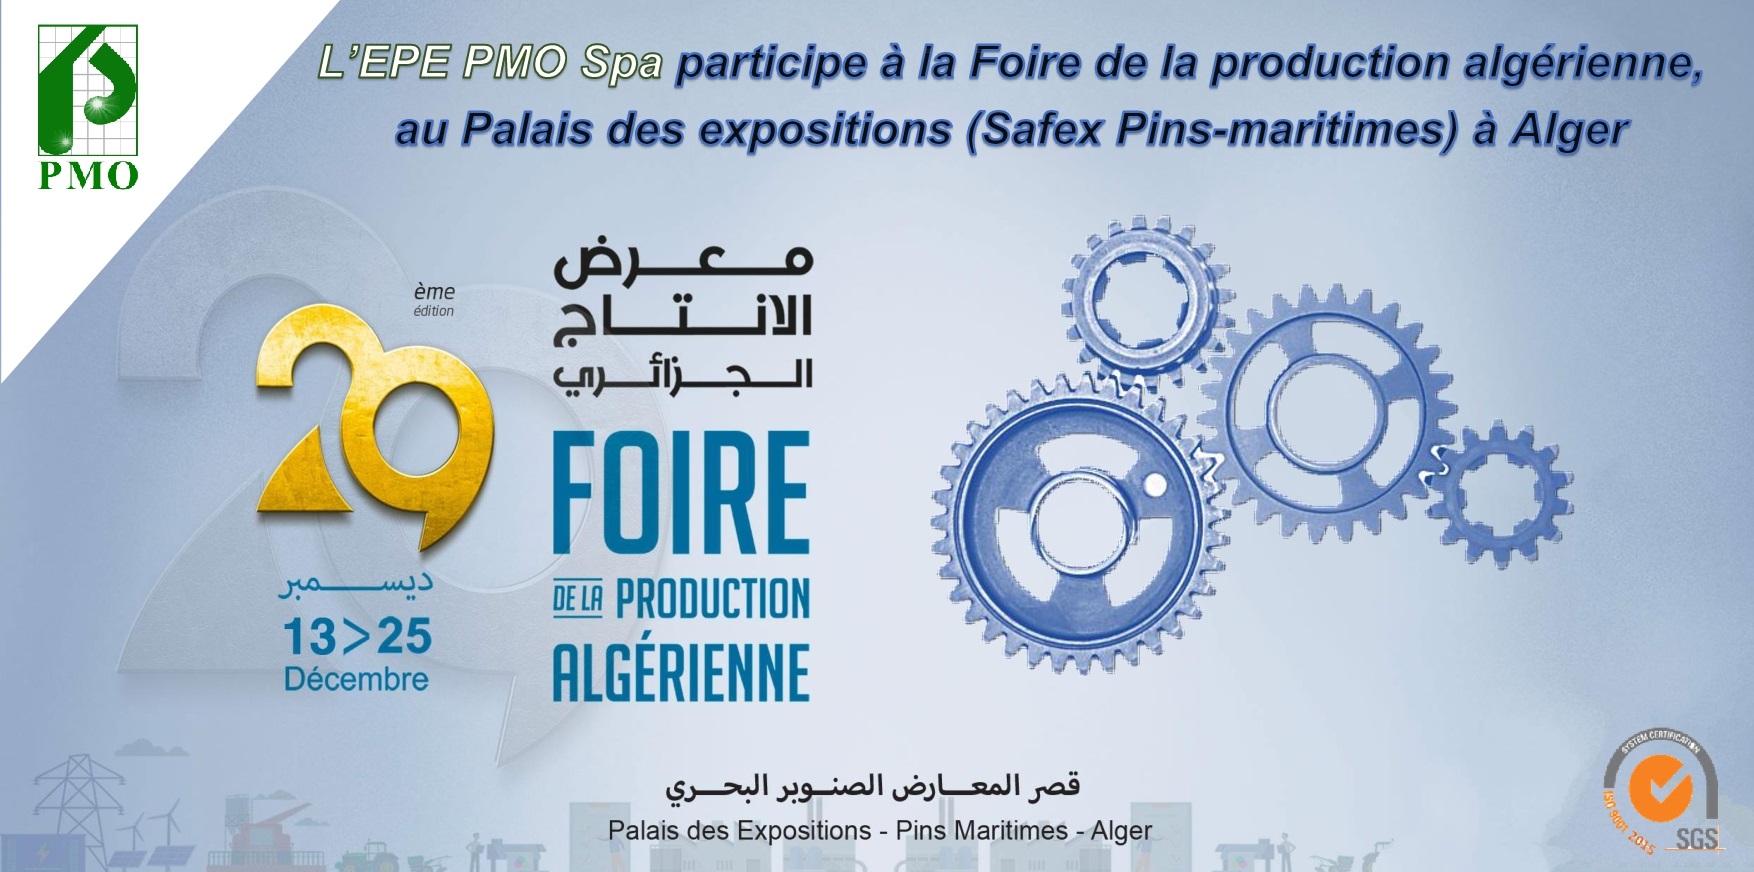 Foire de la production algérienne